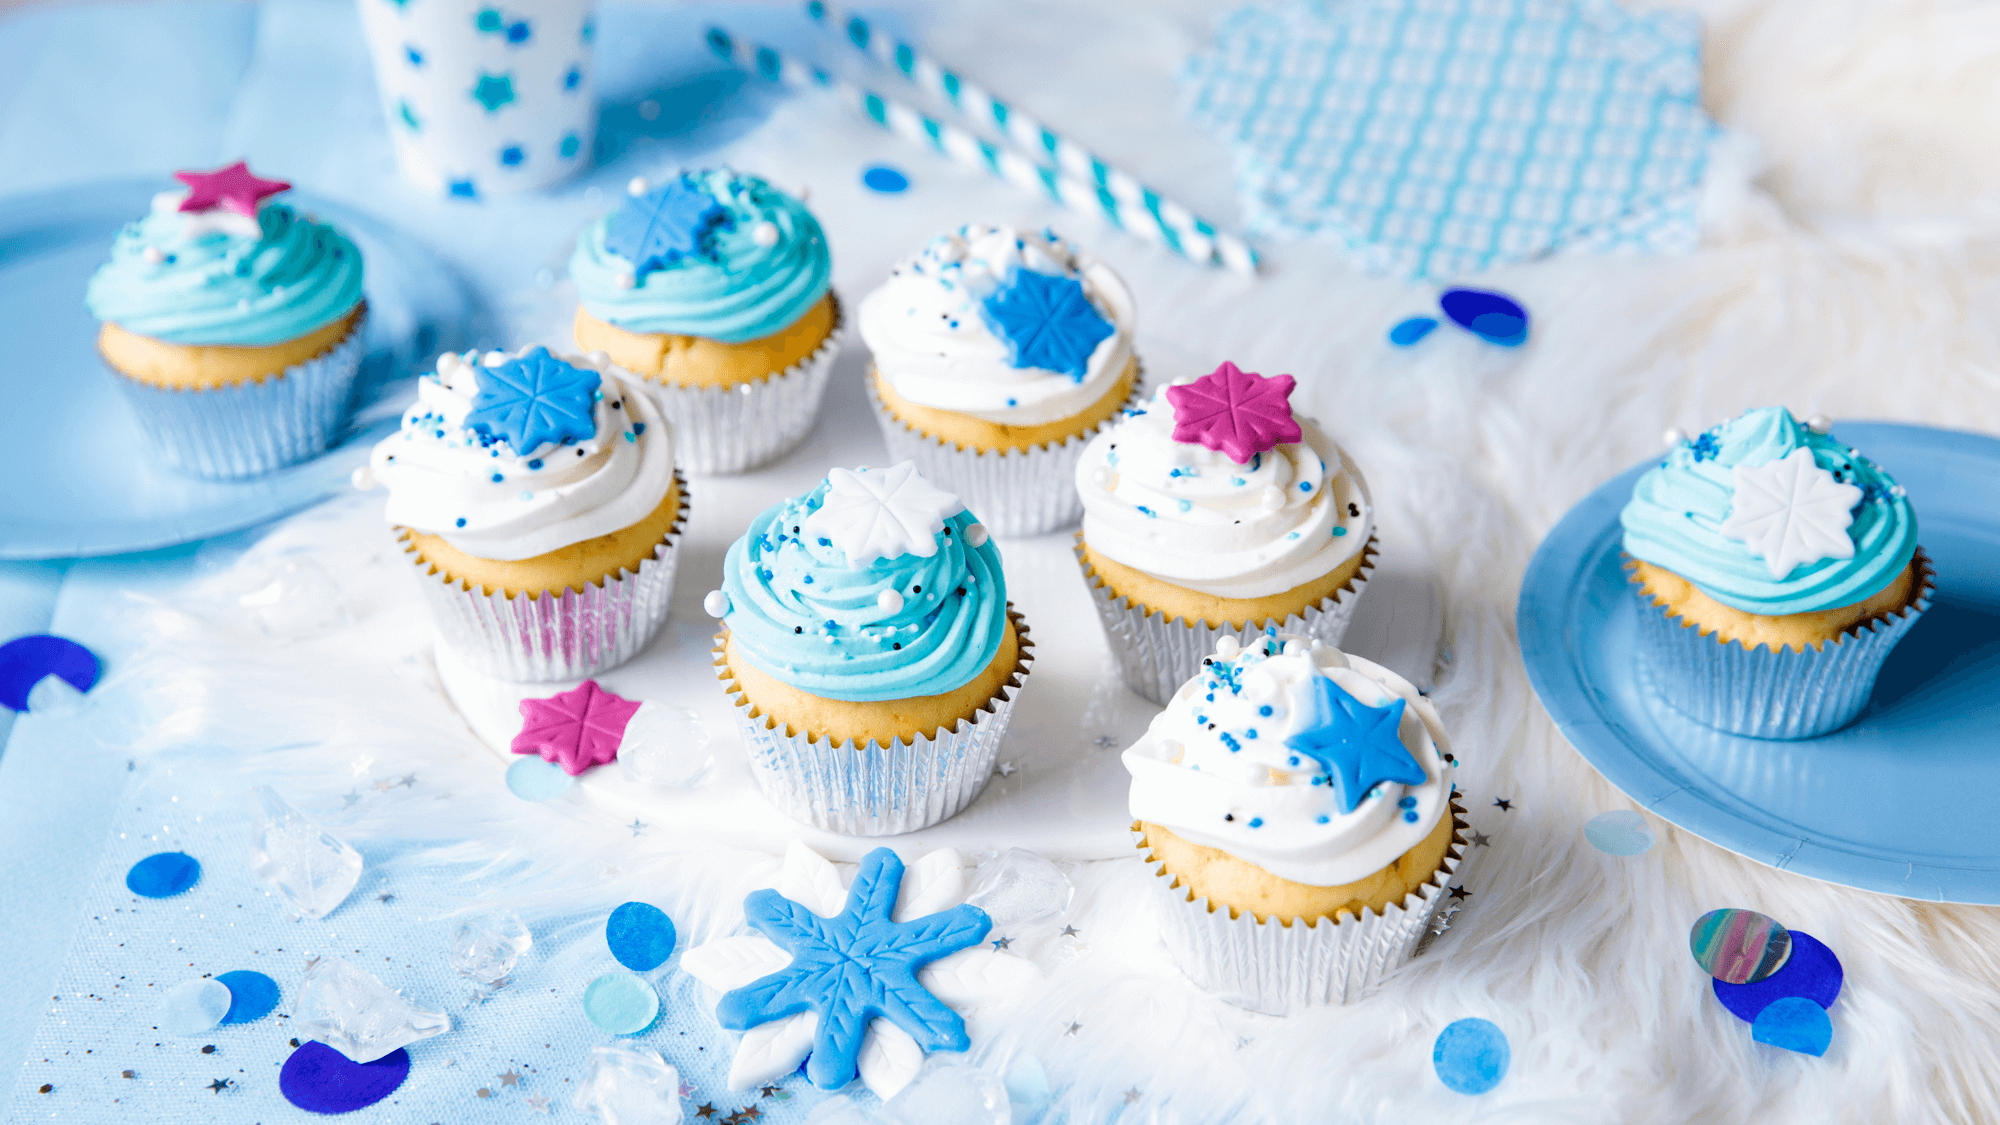 Cupcakes des neiges vanille-chocolat – Recette pour enfants